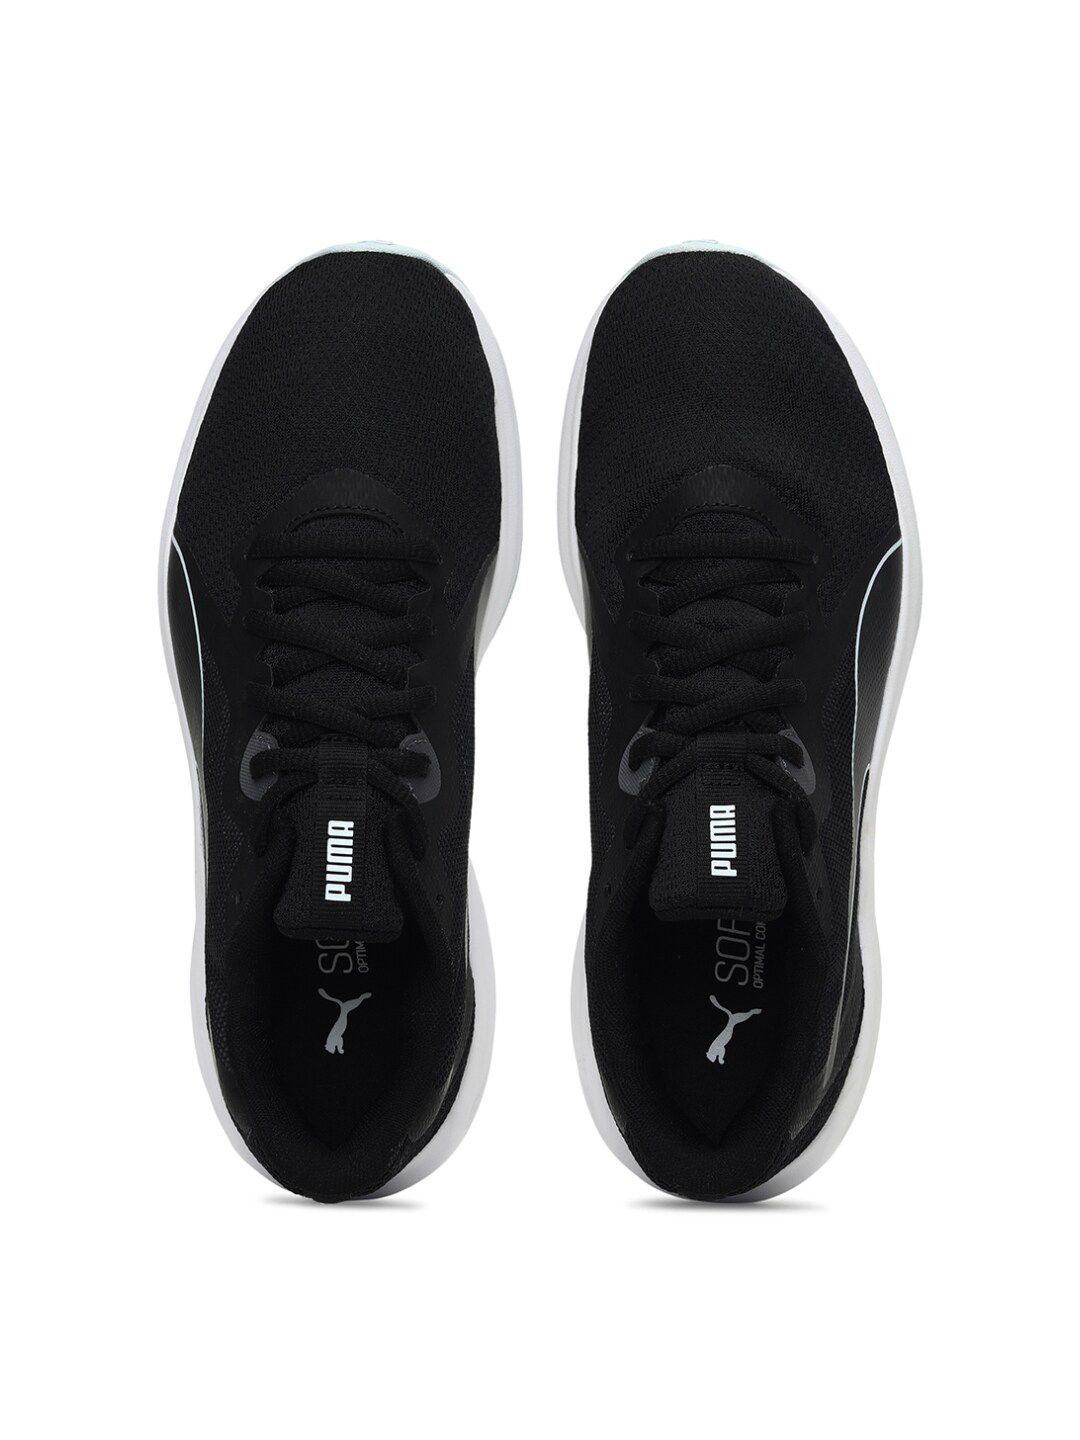 Puma Unisex Black Textile Running Shoes Price in India